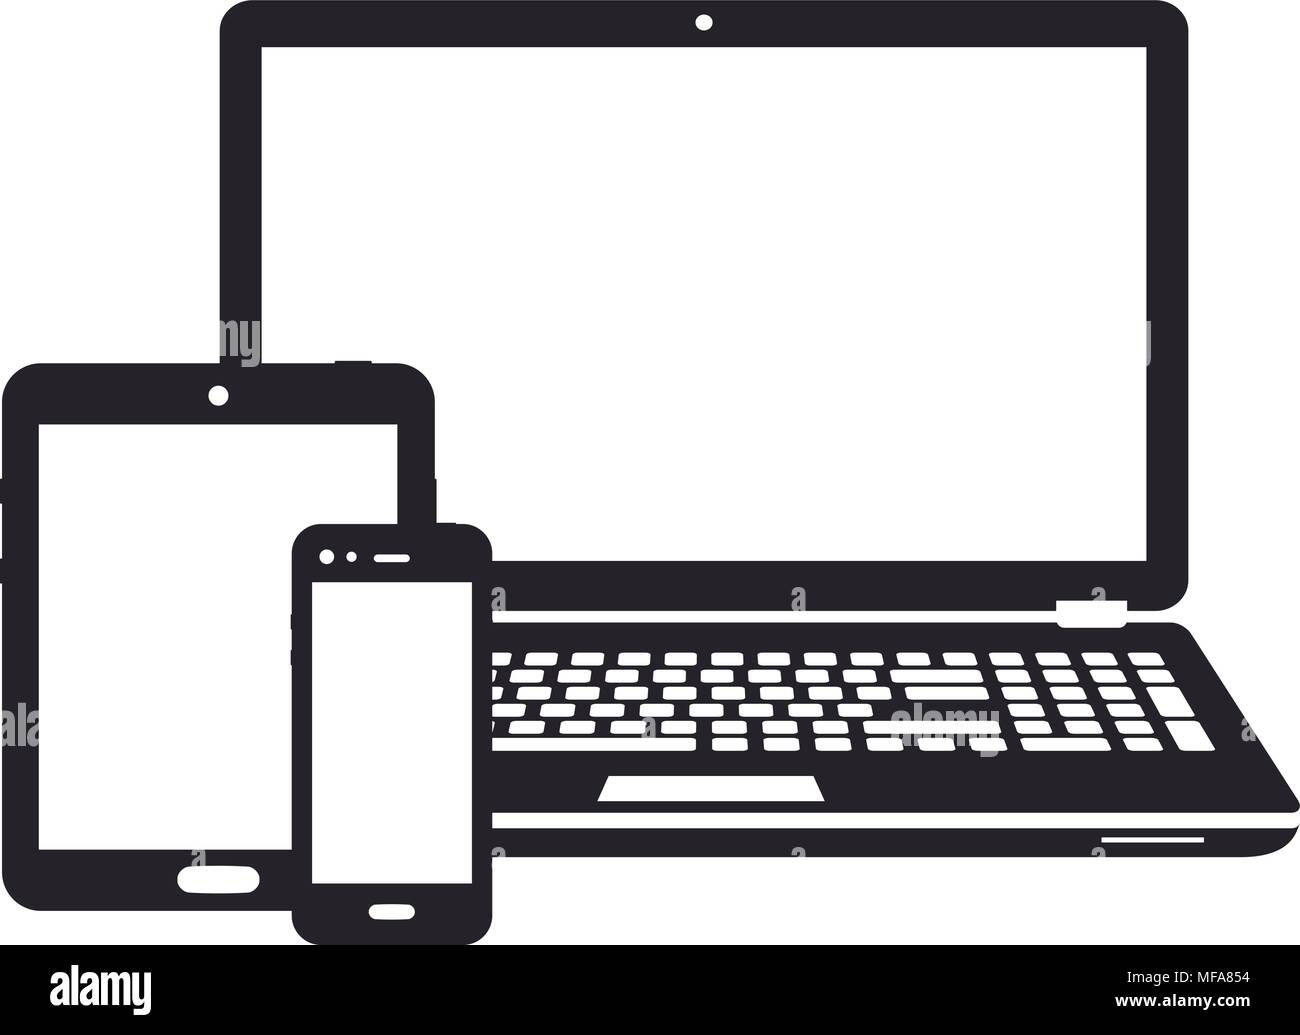 Les appareils numériques - ordinateur portable, tablette et smartphone d'icônes. Vector illustration. Illustration de Vecteur